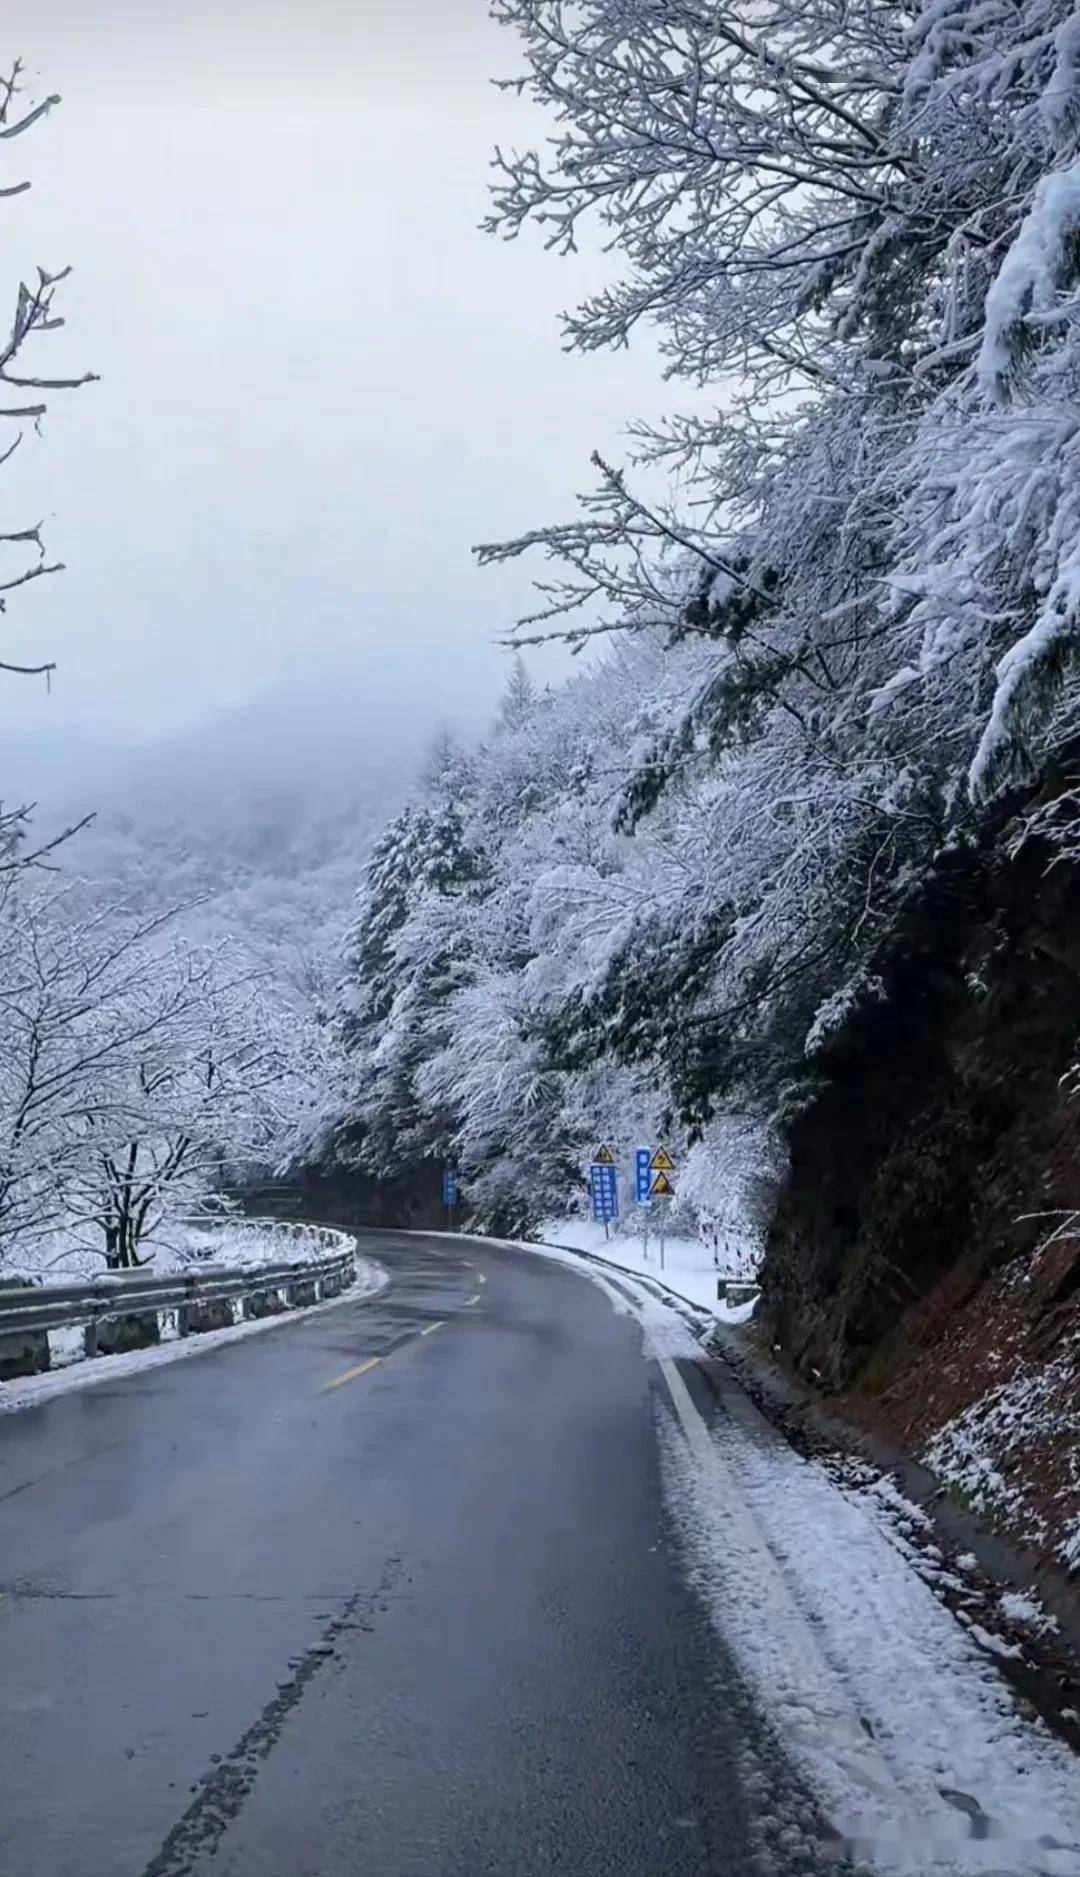 西安秦岭雪景图片